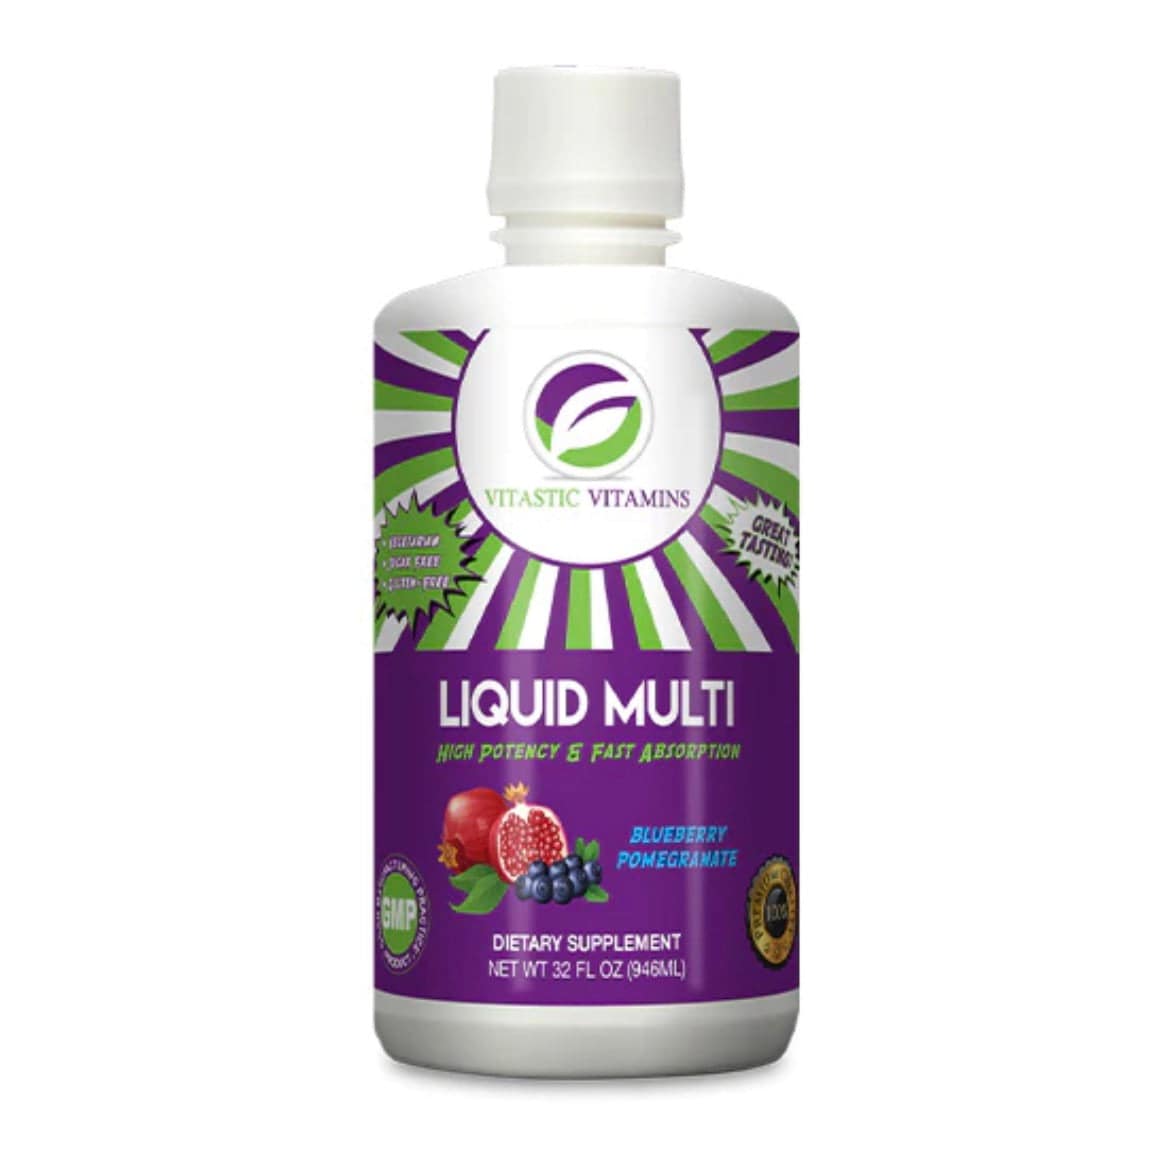 Liquid Multi Superfood - Vitastic Vitamins - Prime Sports Nutrition